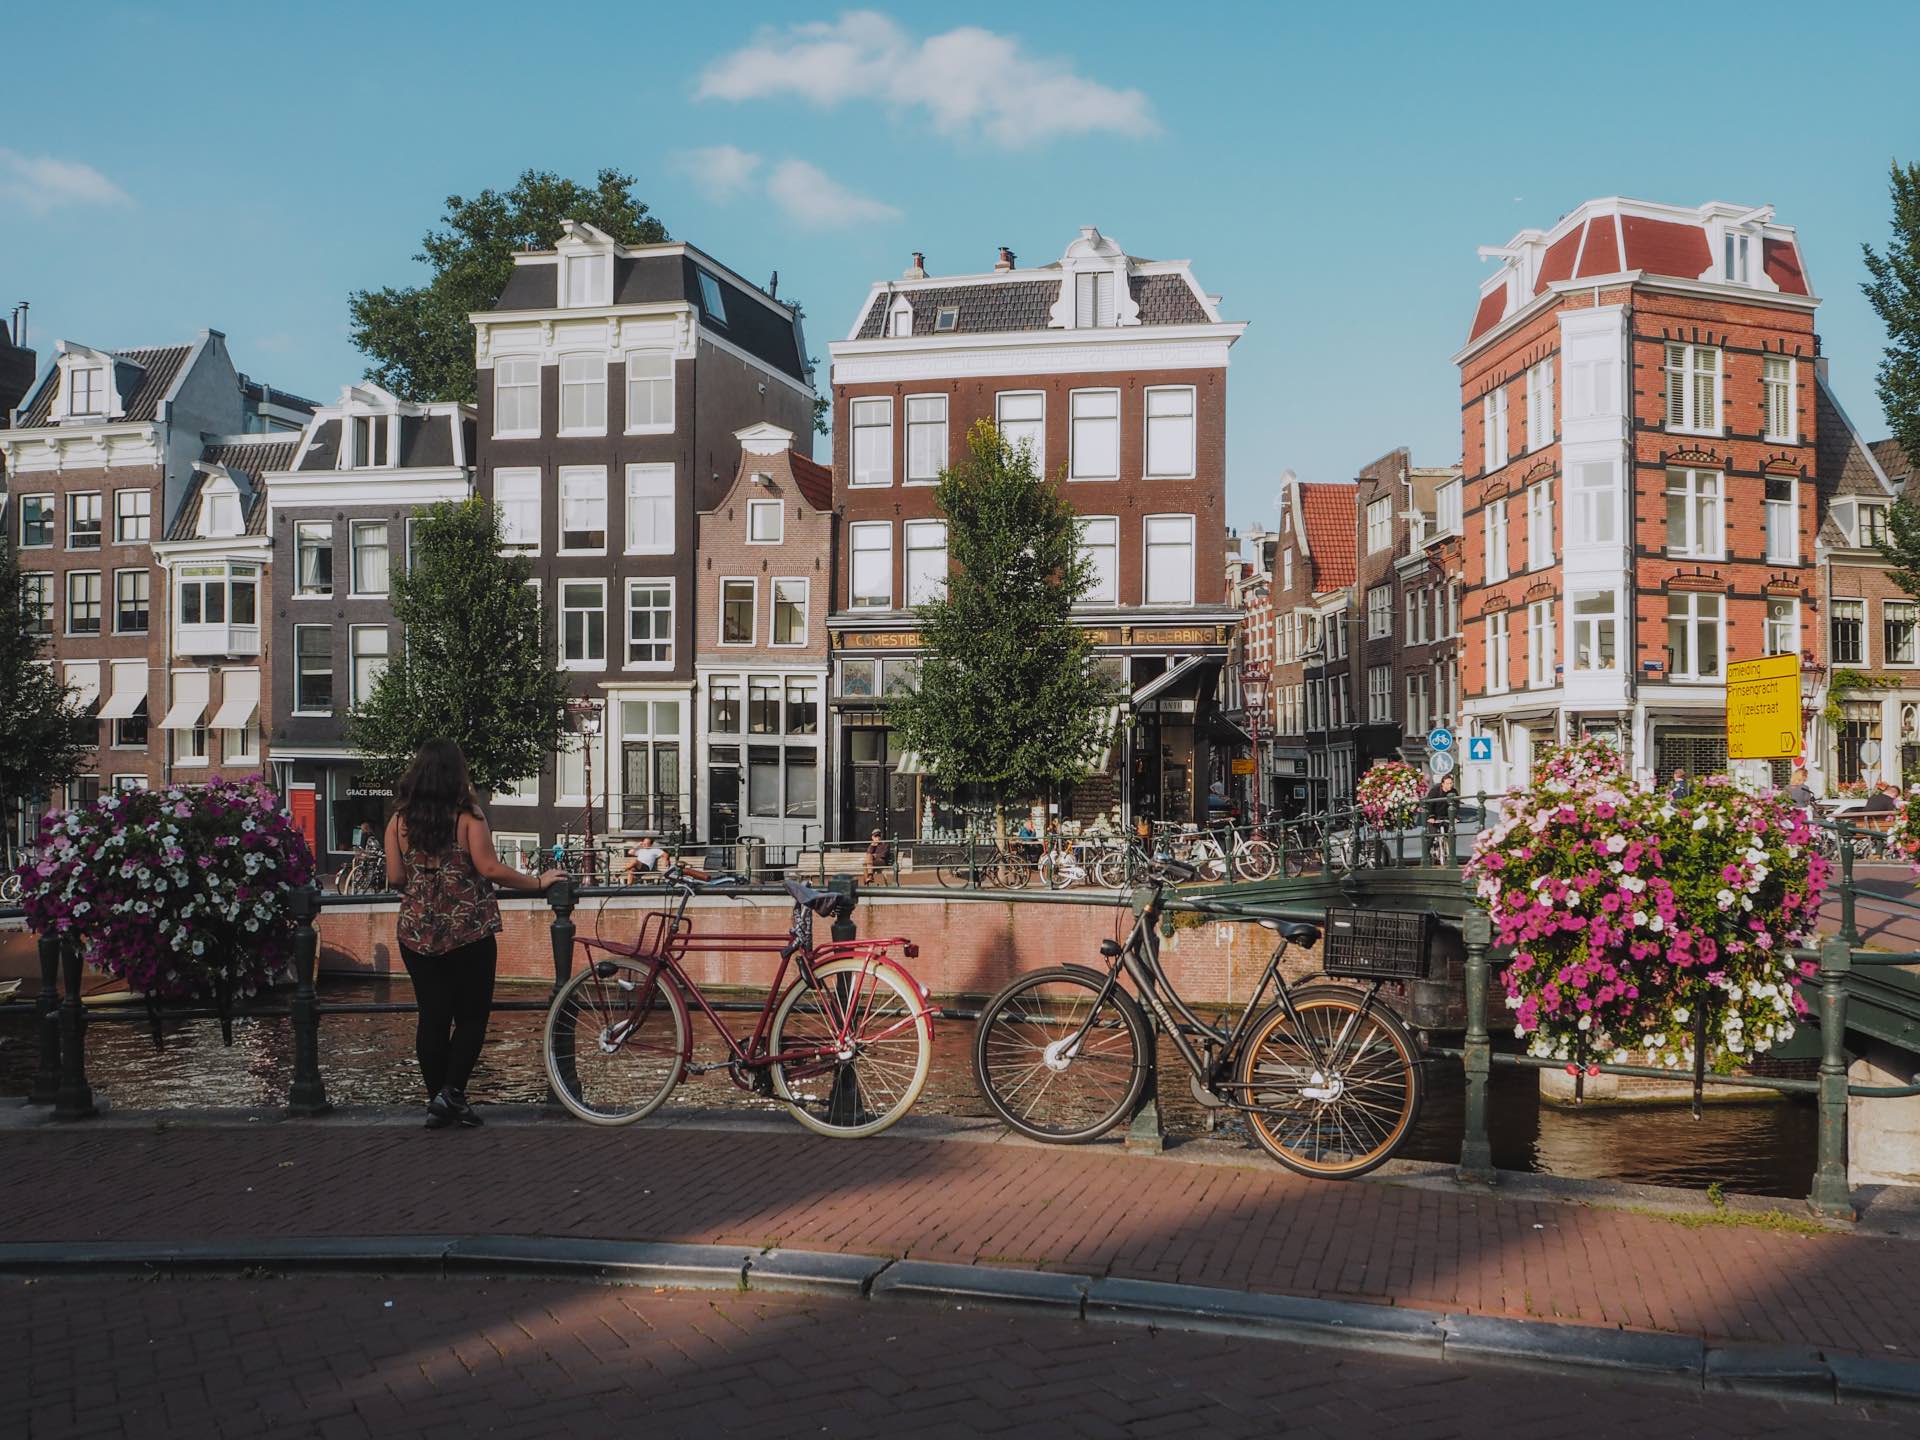 Paseo por los canales de Ámsterdam